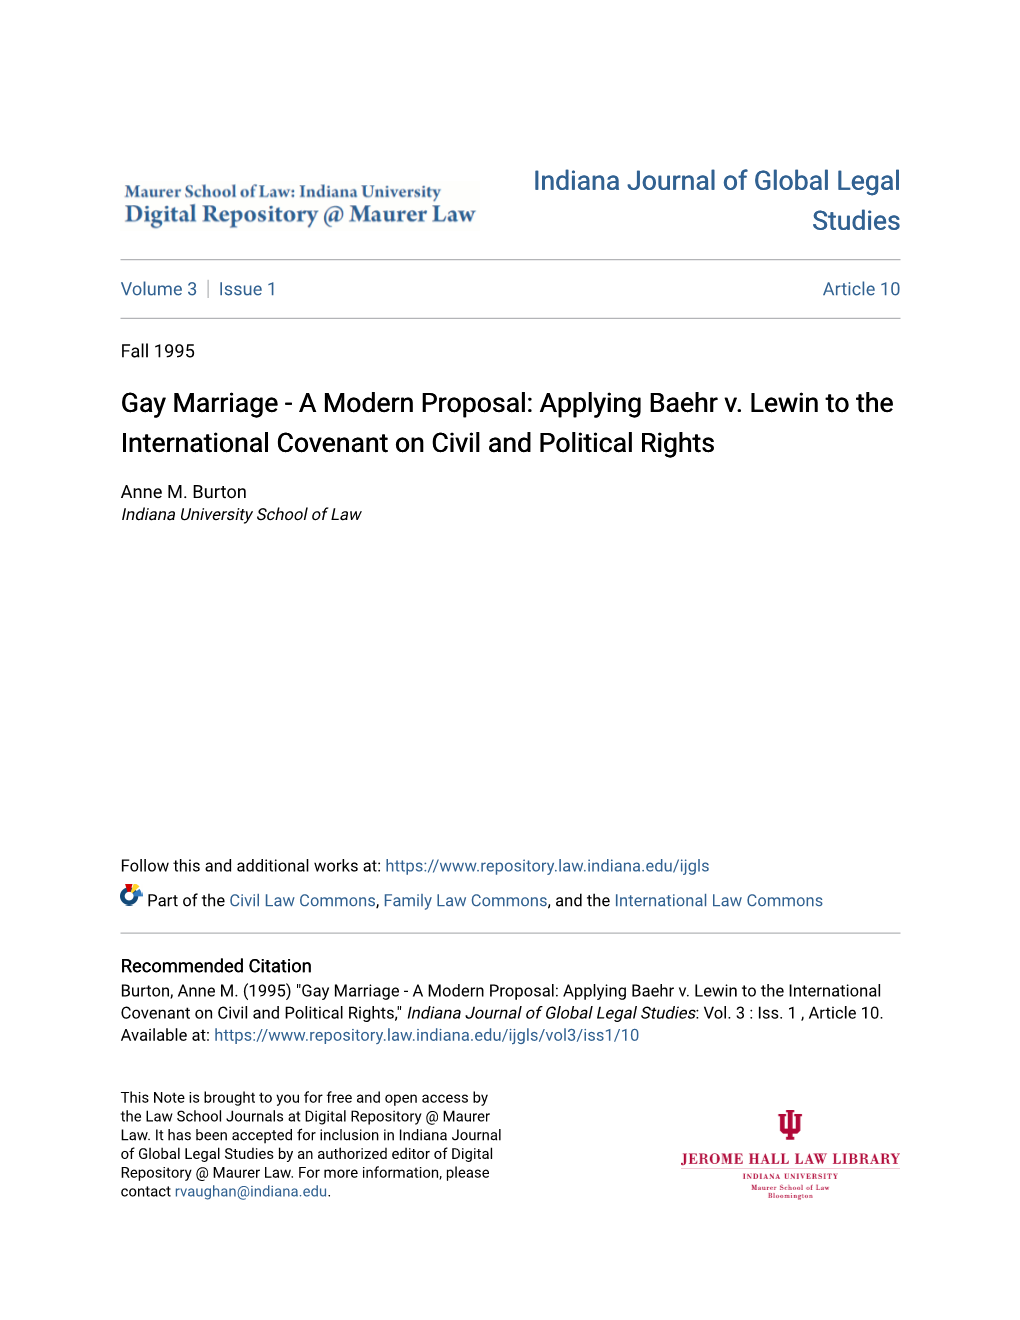 Gay Marriage - a Modern Proposal: Applying Baehr V